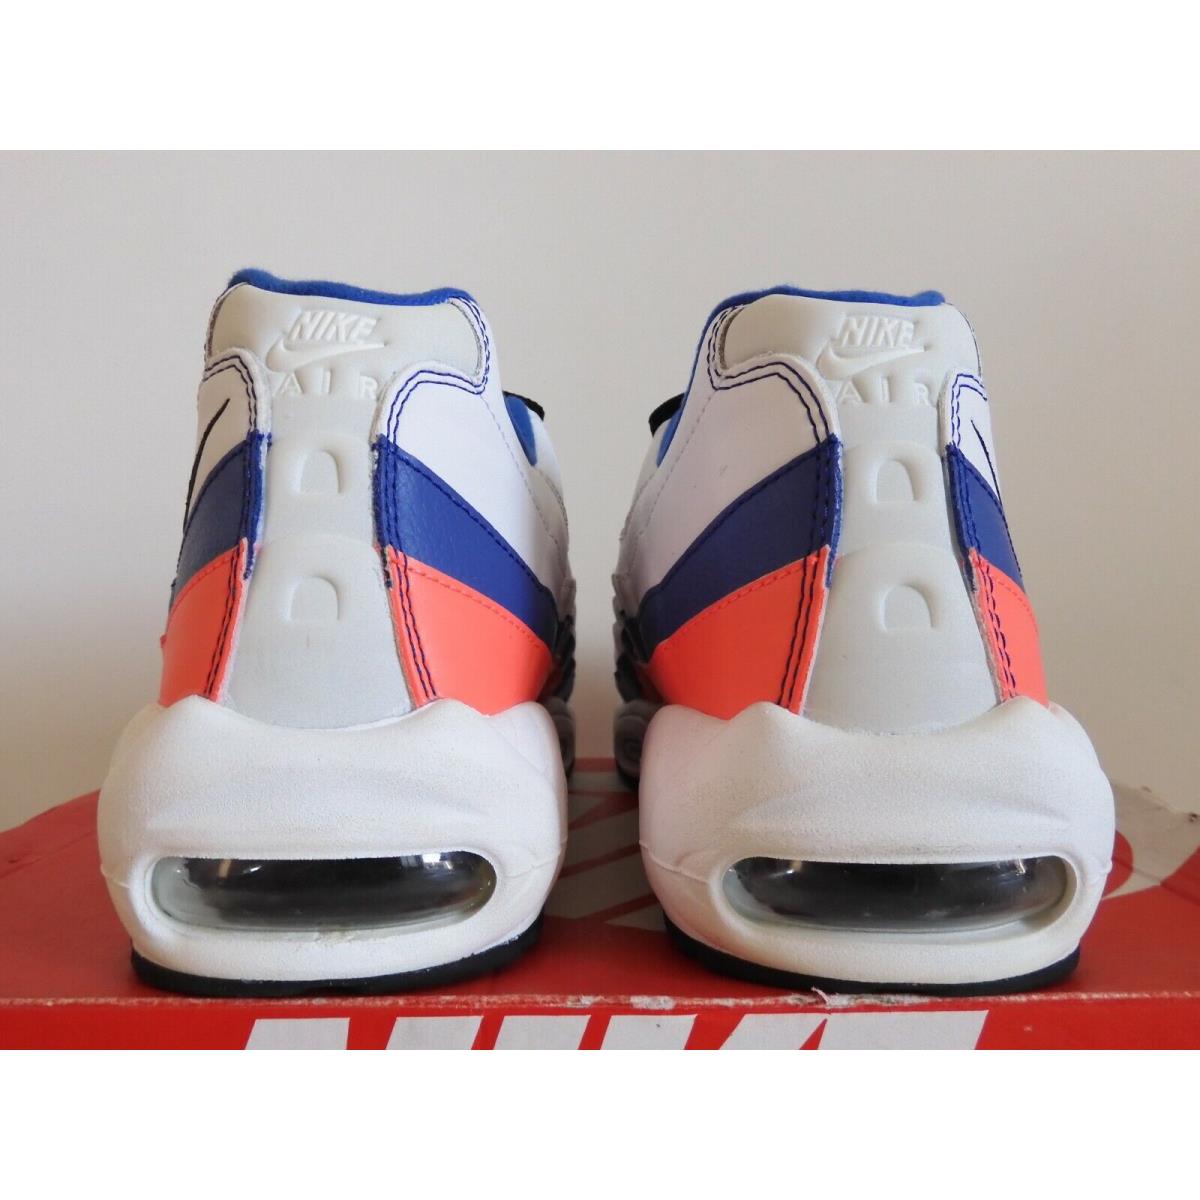 Nike shoes Air Max - White 2